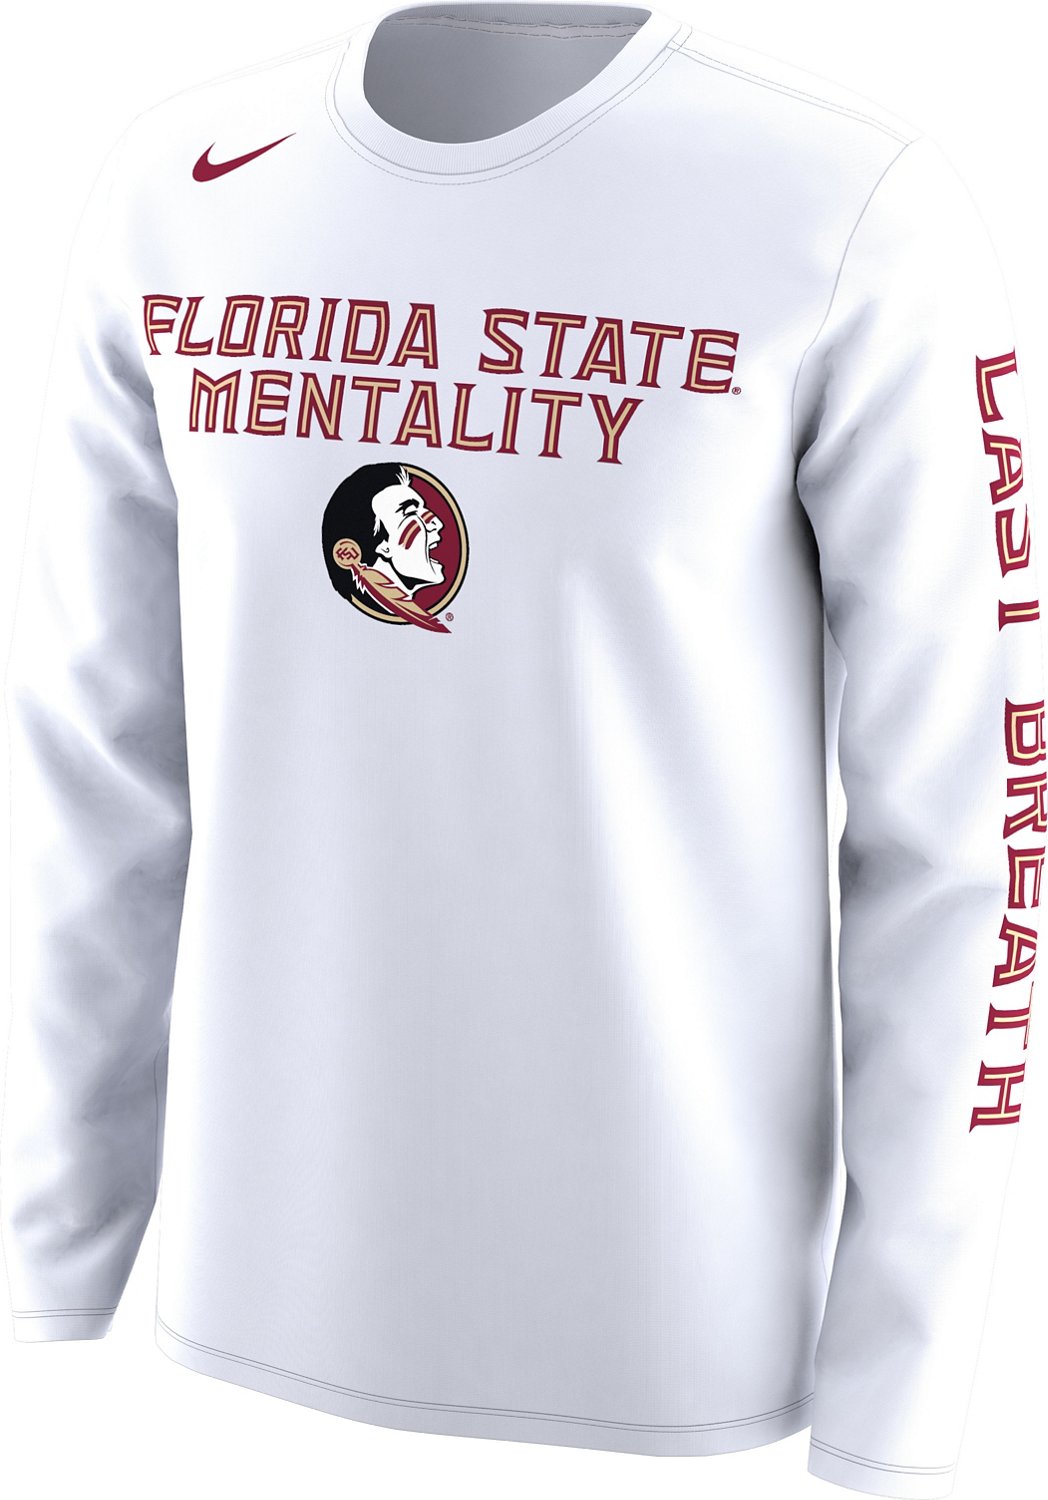 florida state university football jersey